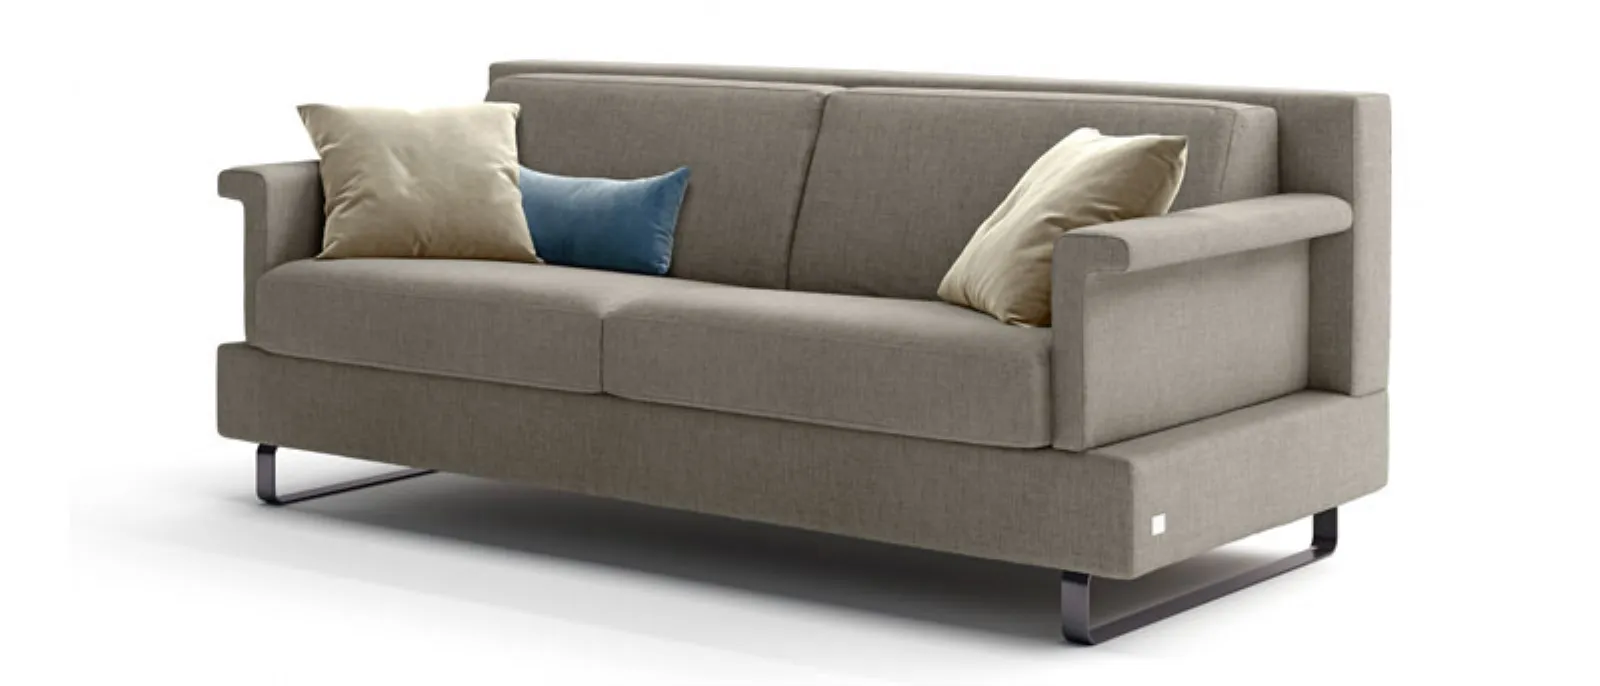 shaped armrest sofa bed